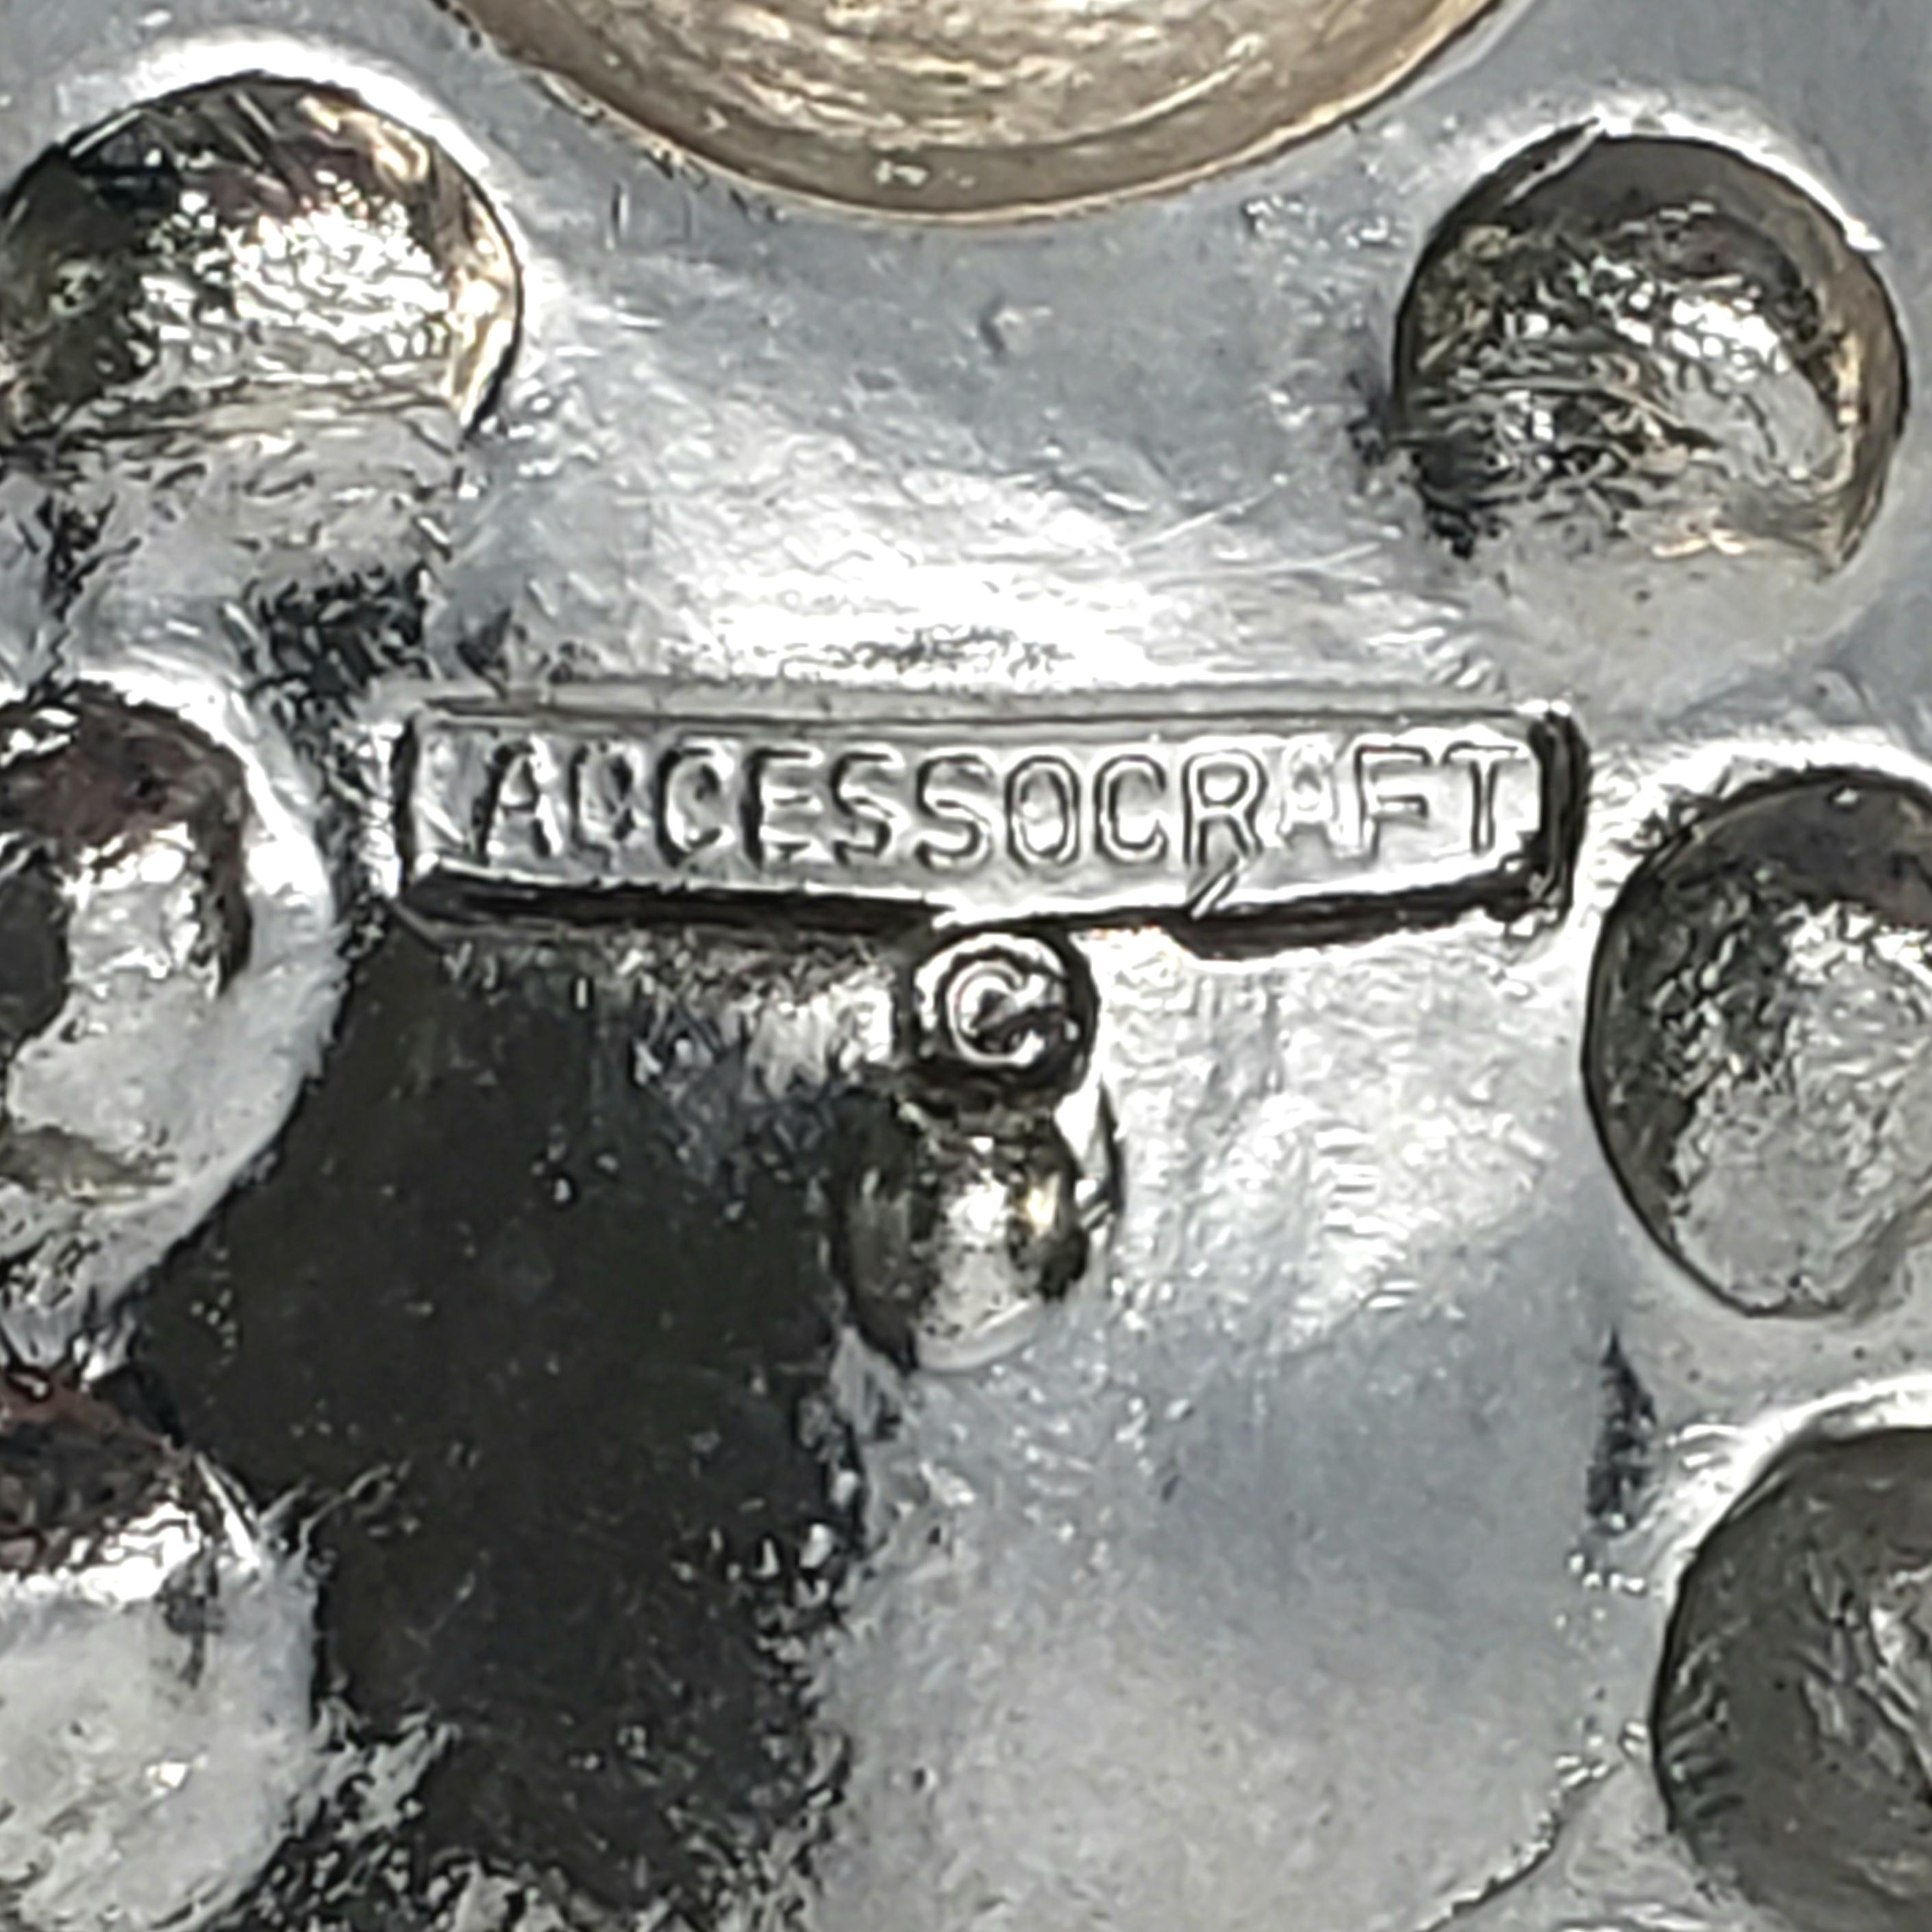 Accessocraft Silver Tone Pendant For Sale 1